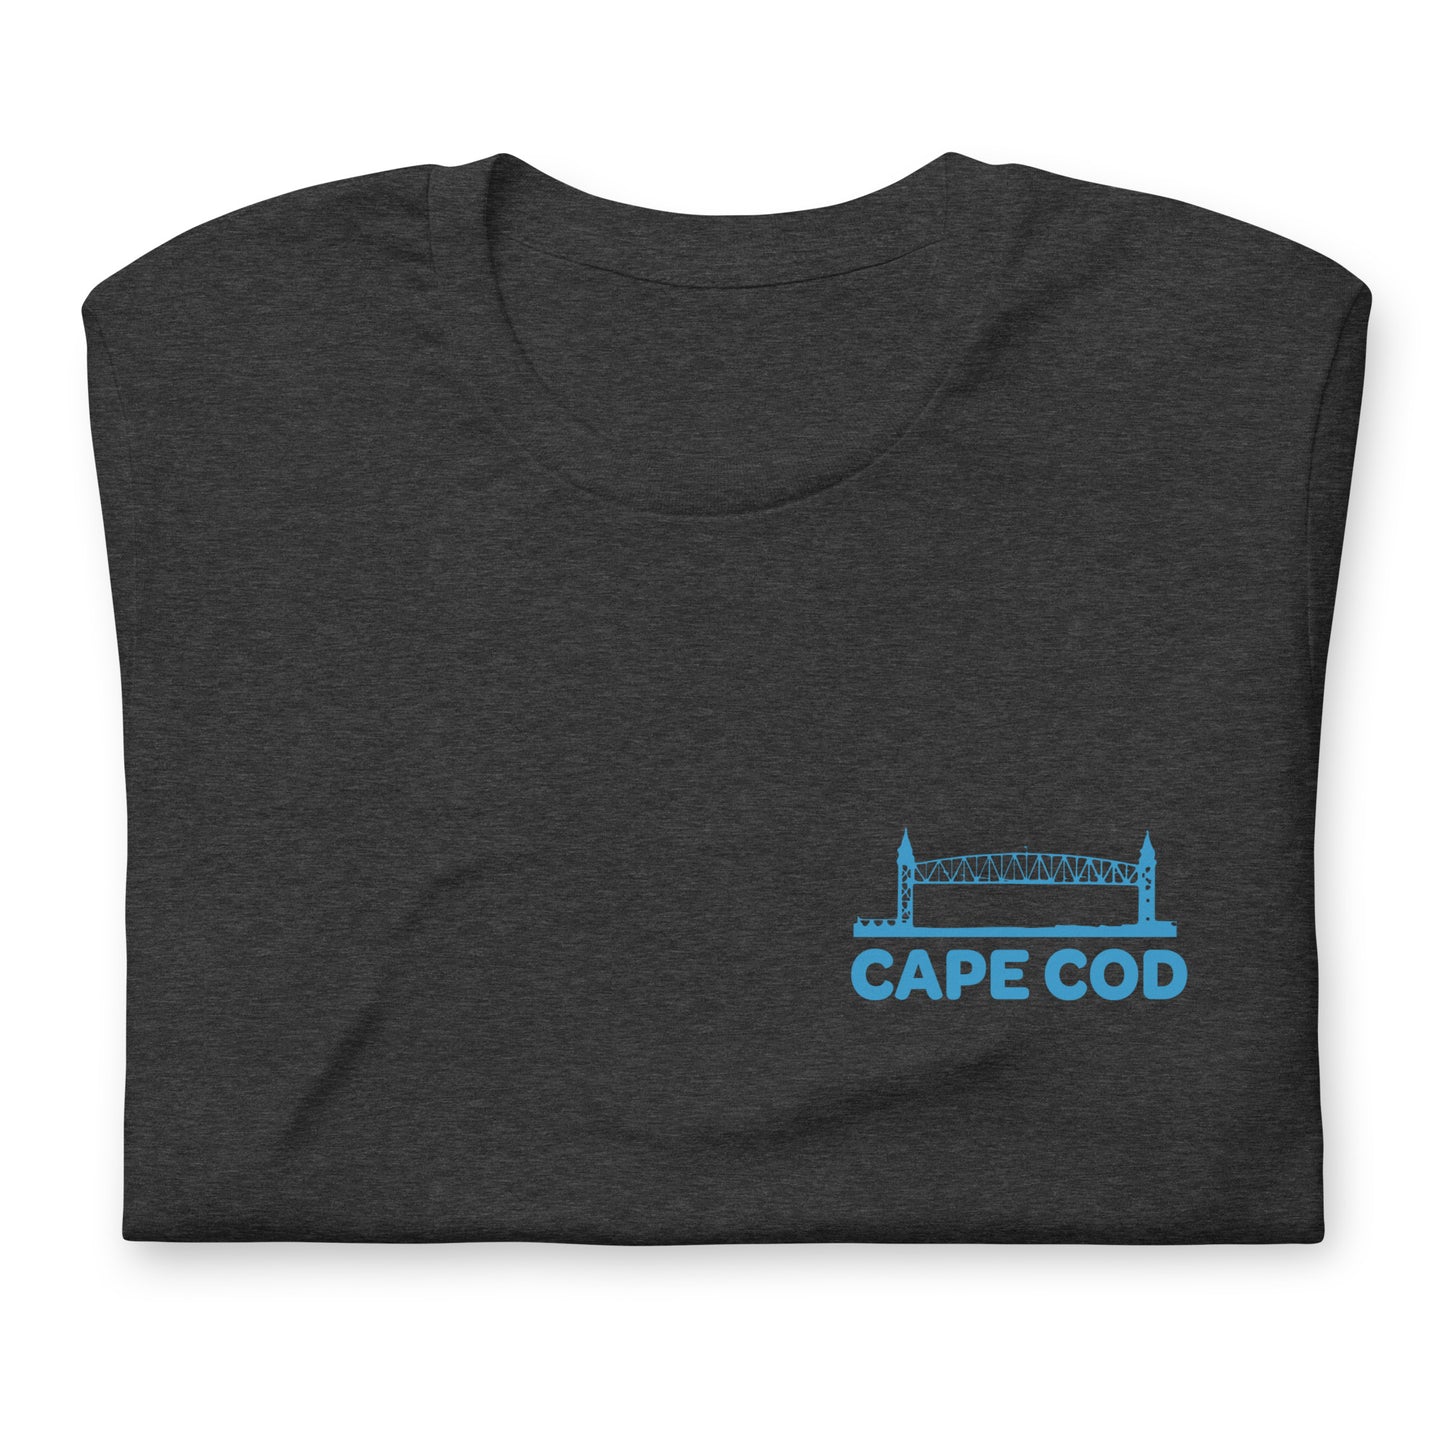 Cape Bridges - Unisex t-shirt